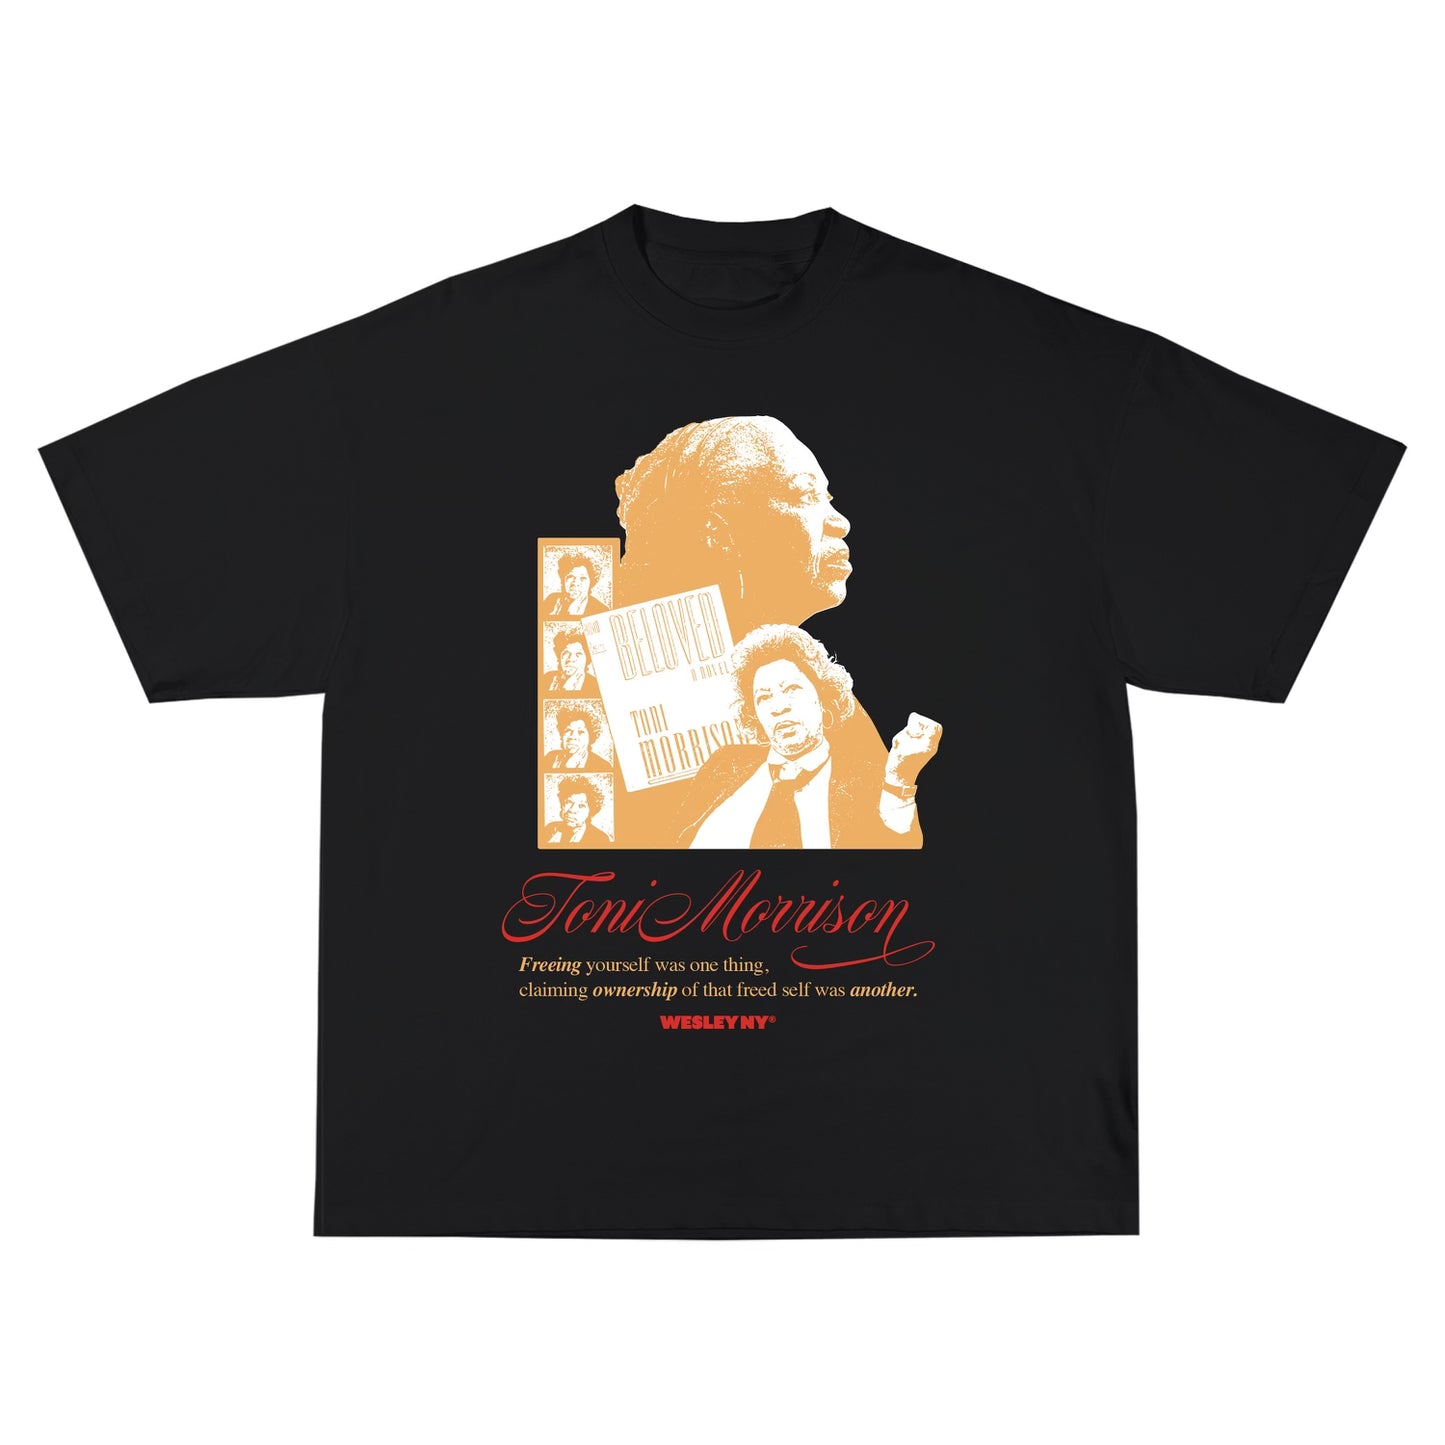 Toni Morrison Tribute T Shirt